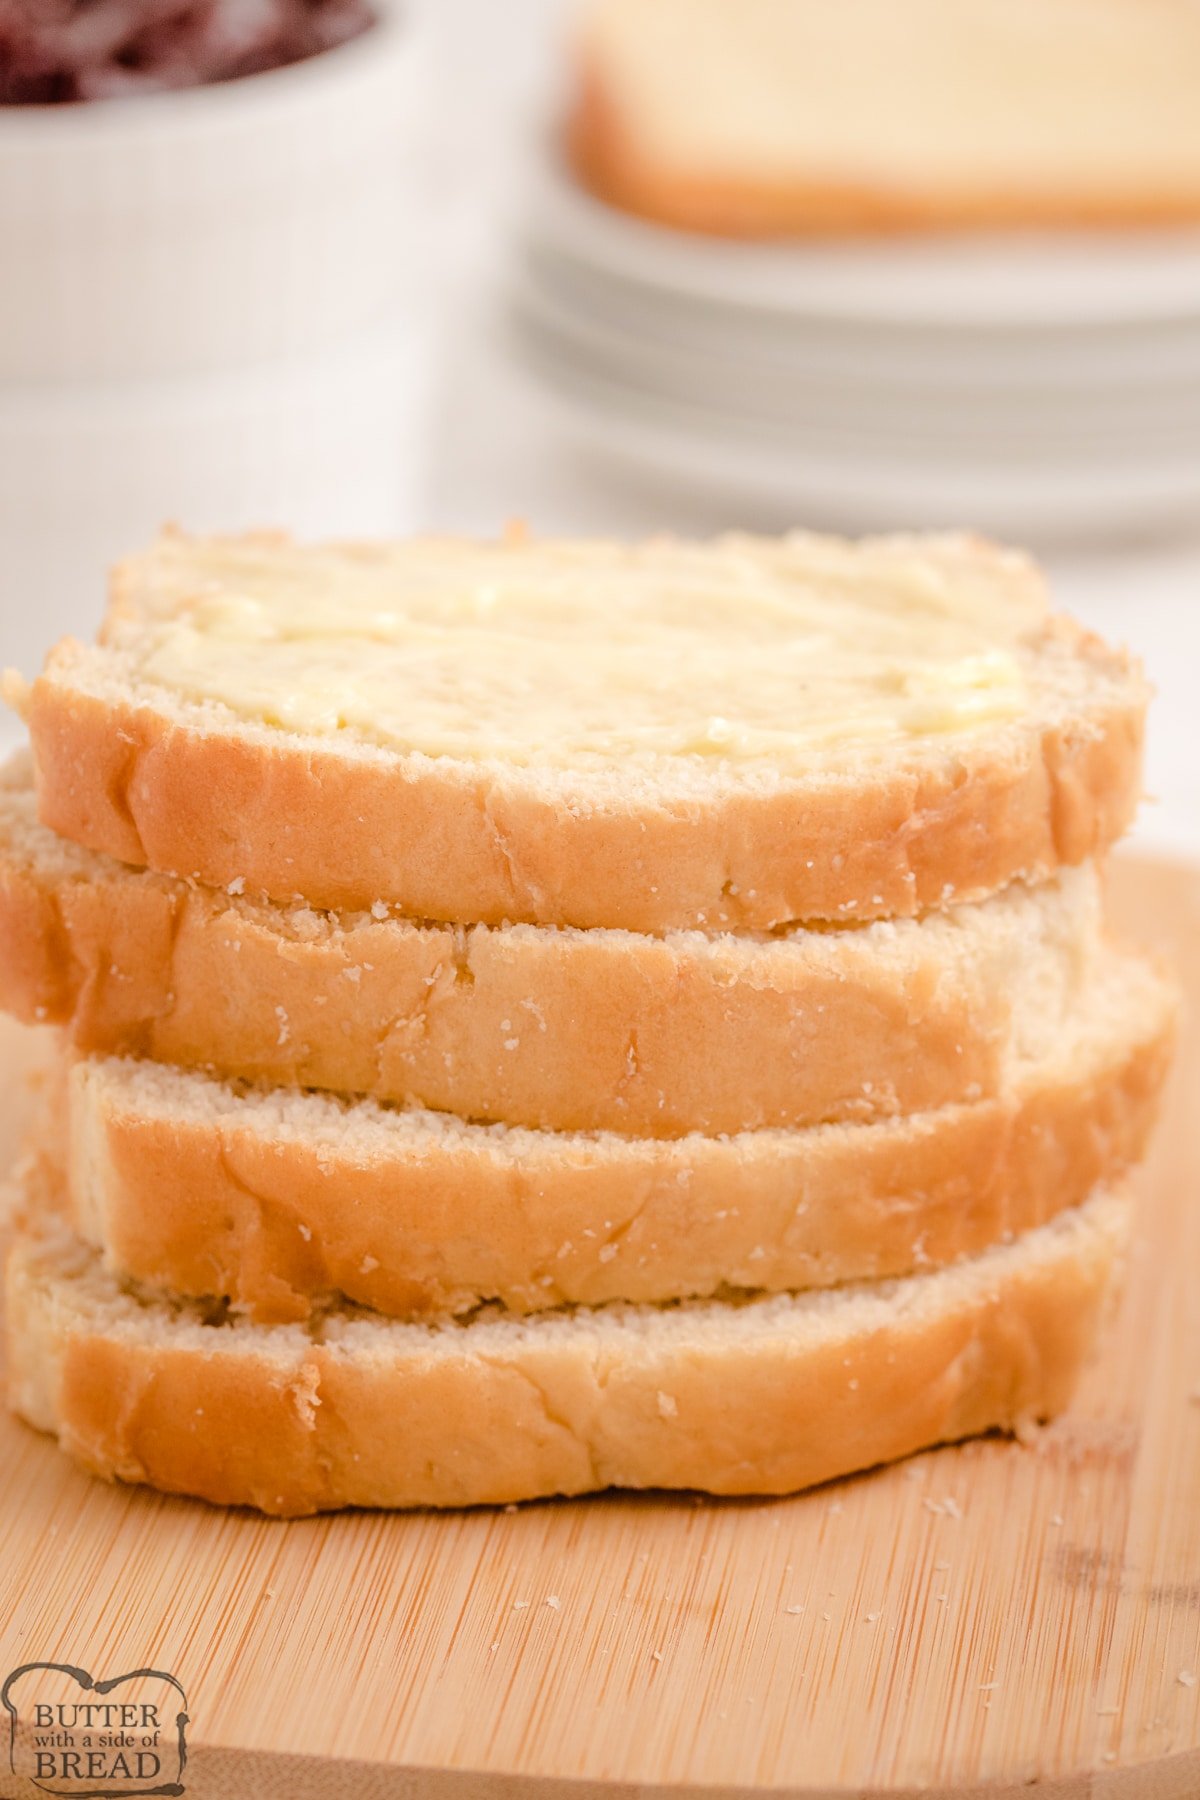 https://butterwithasideofbread.com/wp-content/uploads/2019/01/Best-Homemade-Bread-recipe-25.jpg